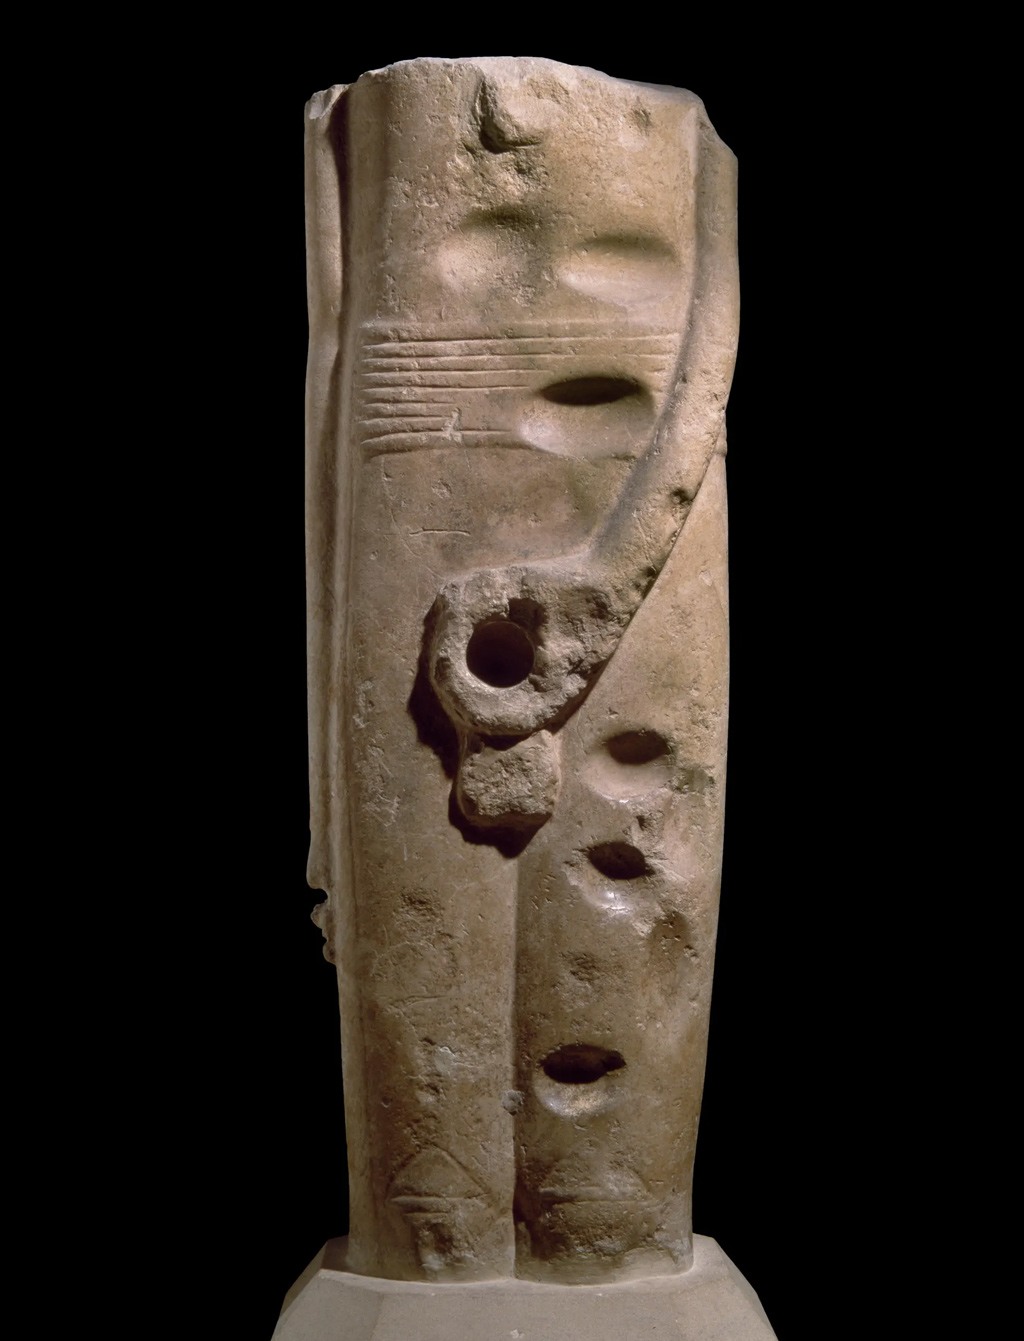 في الصورة…فجوة حيث كان في السابق يوجد قضيب في تمثال الإله (مين) من عام 3300 قبل الميلاد.